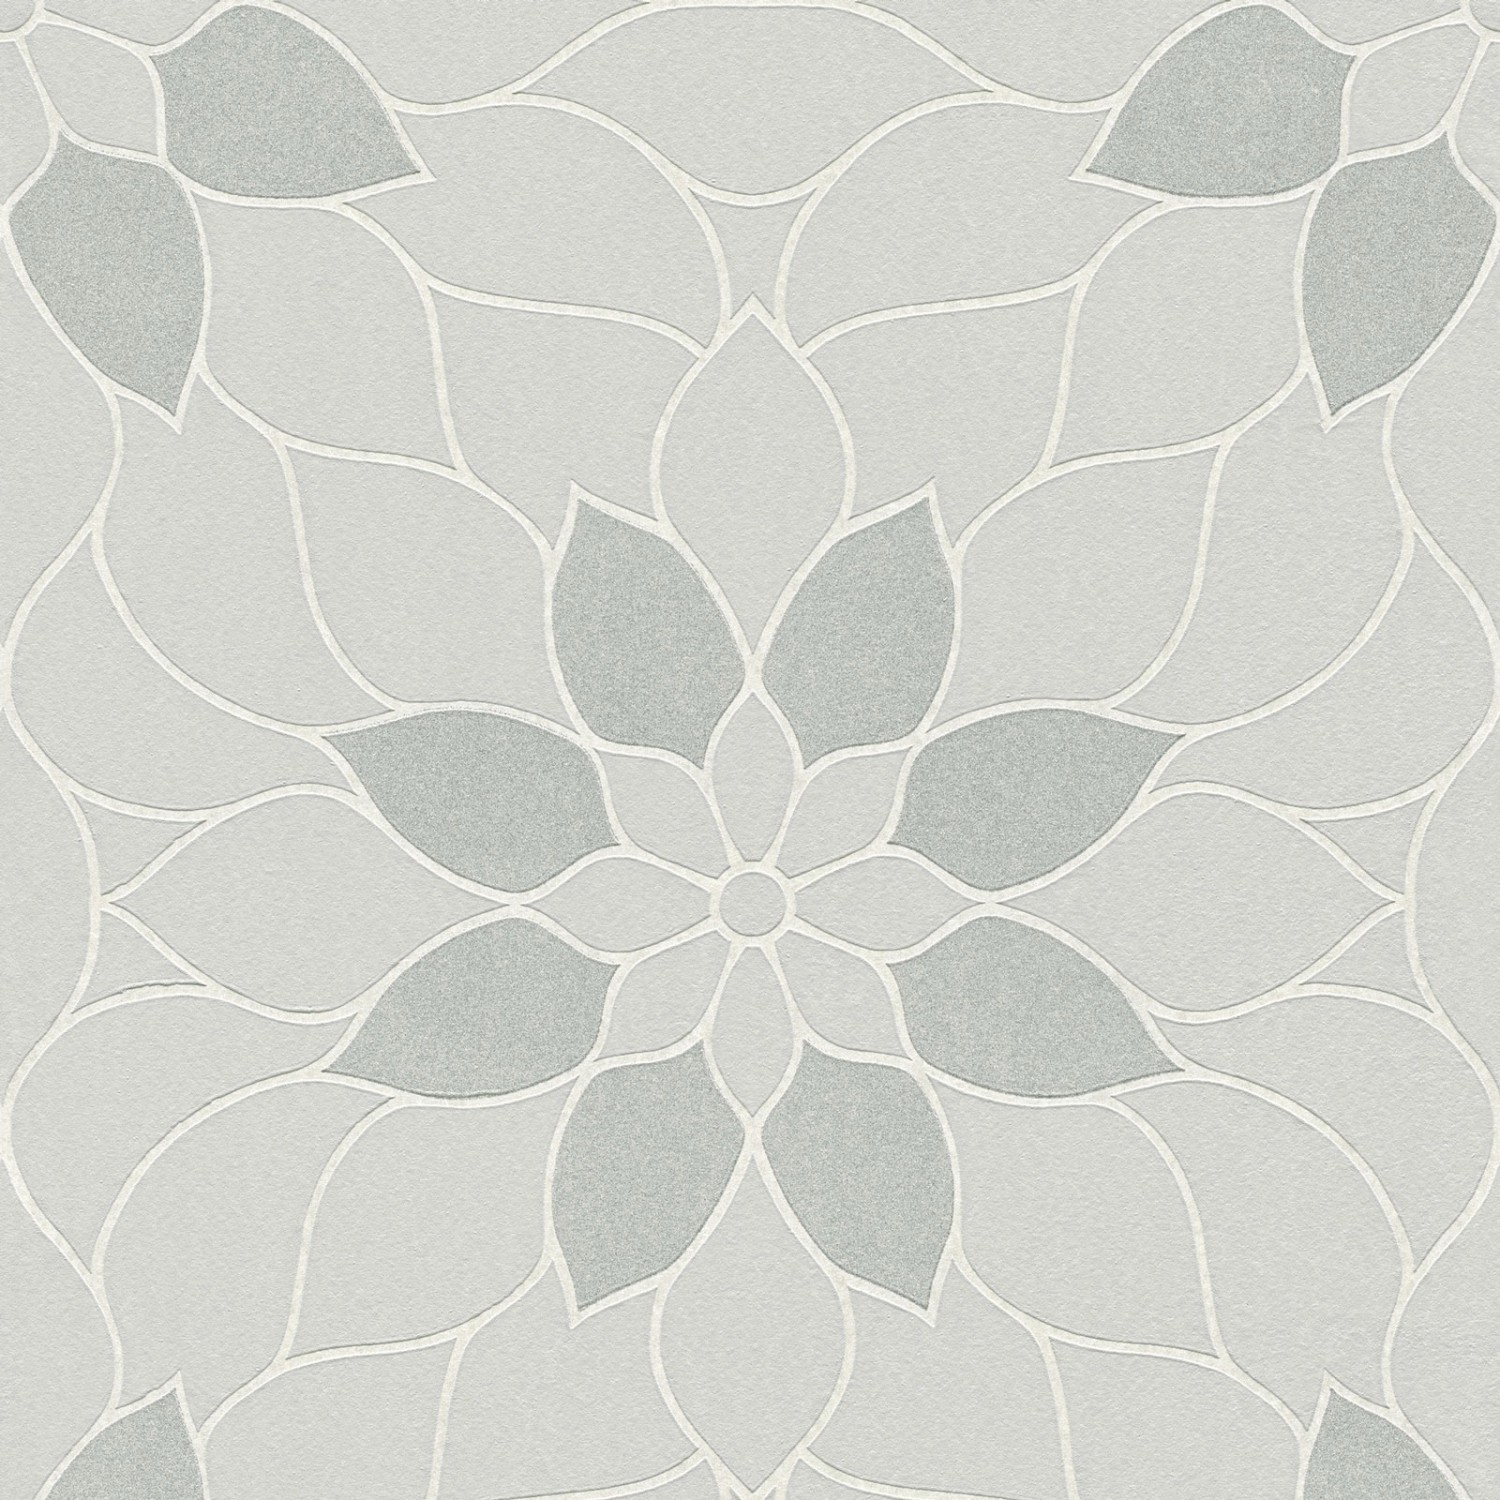 Bricoflor Blumen Tapete in Silber Grau Glitzer Vliestapete mit Mosaik Design Floral Vlies Blumentapete Modern für Schlafzimmer und Badezimmer von Bricoflor